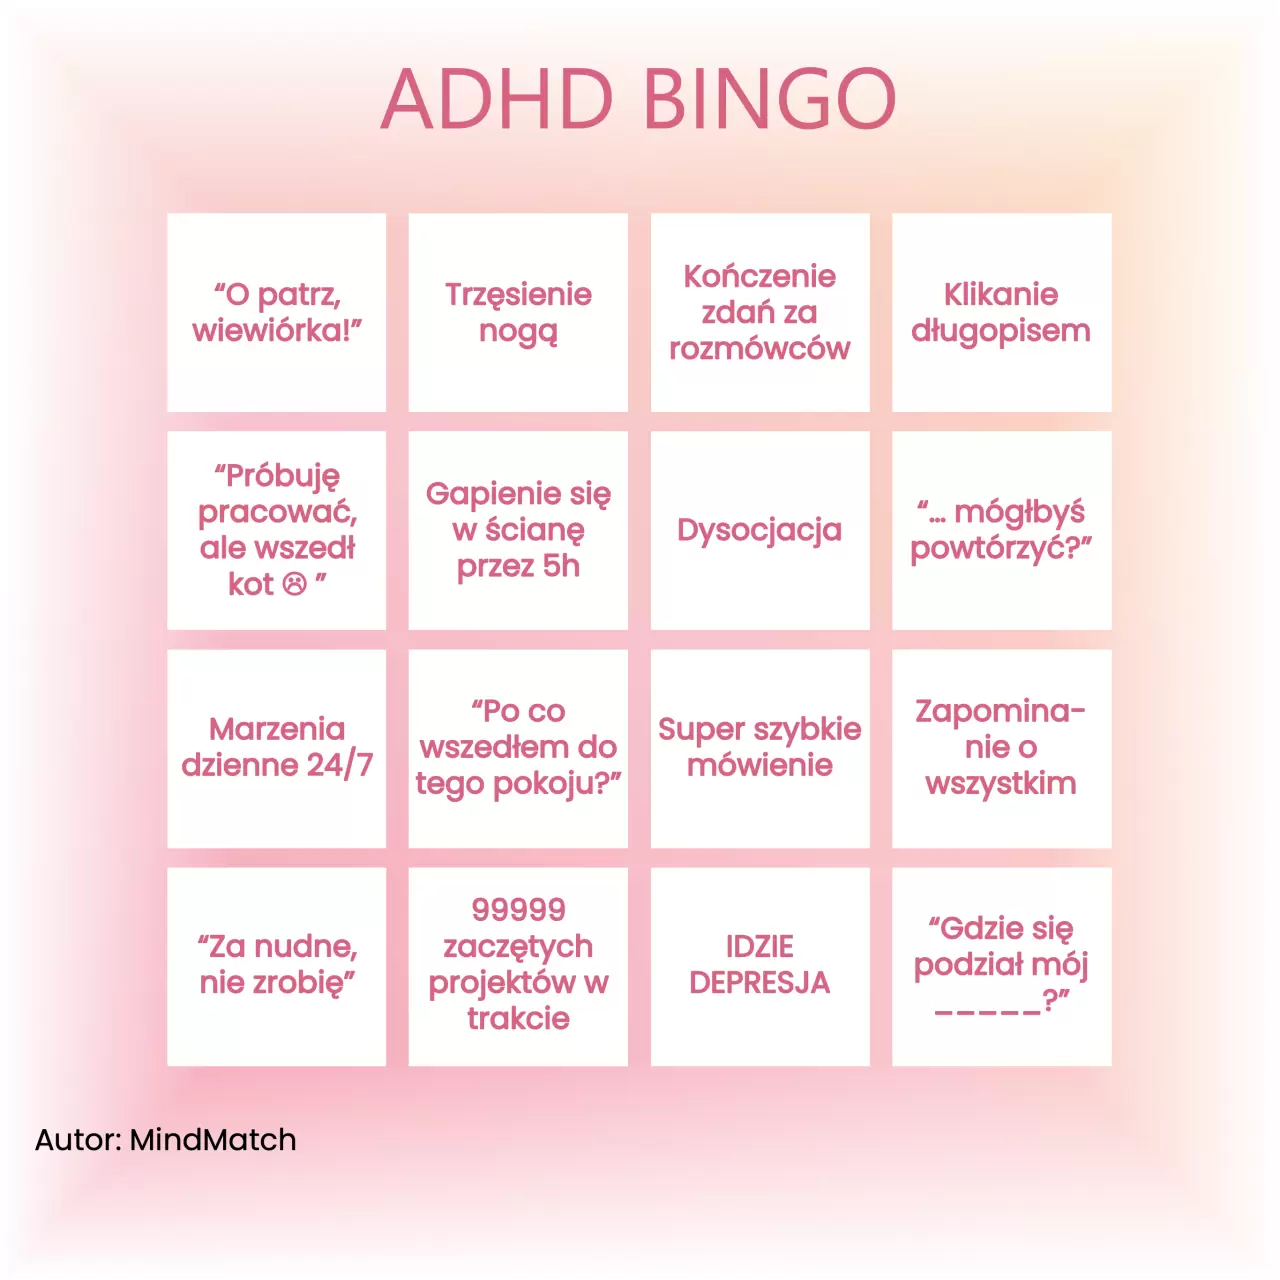 ADHD Objawy Bingo: Jak dużo z tych objawów widzisz w swoim życiu?